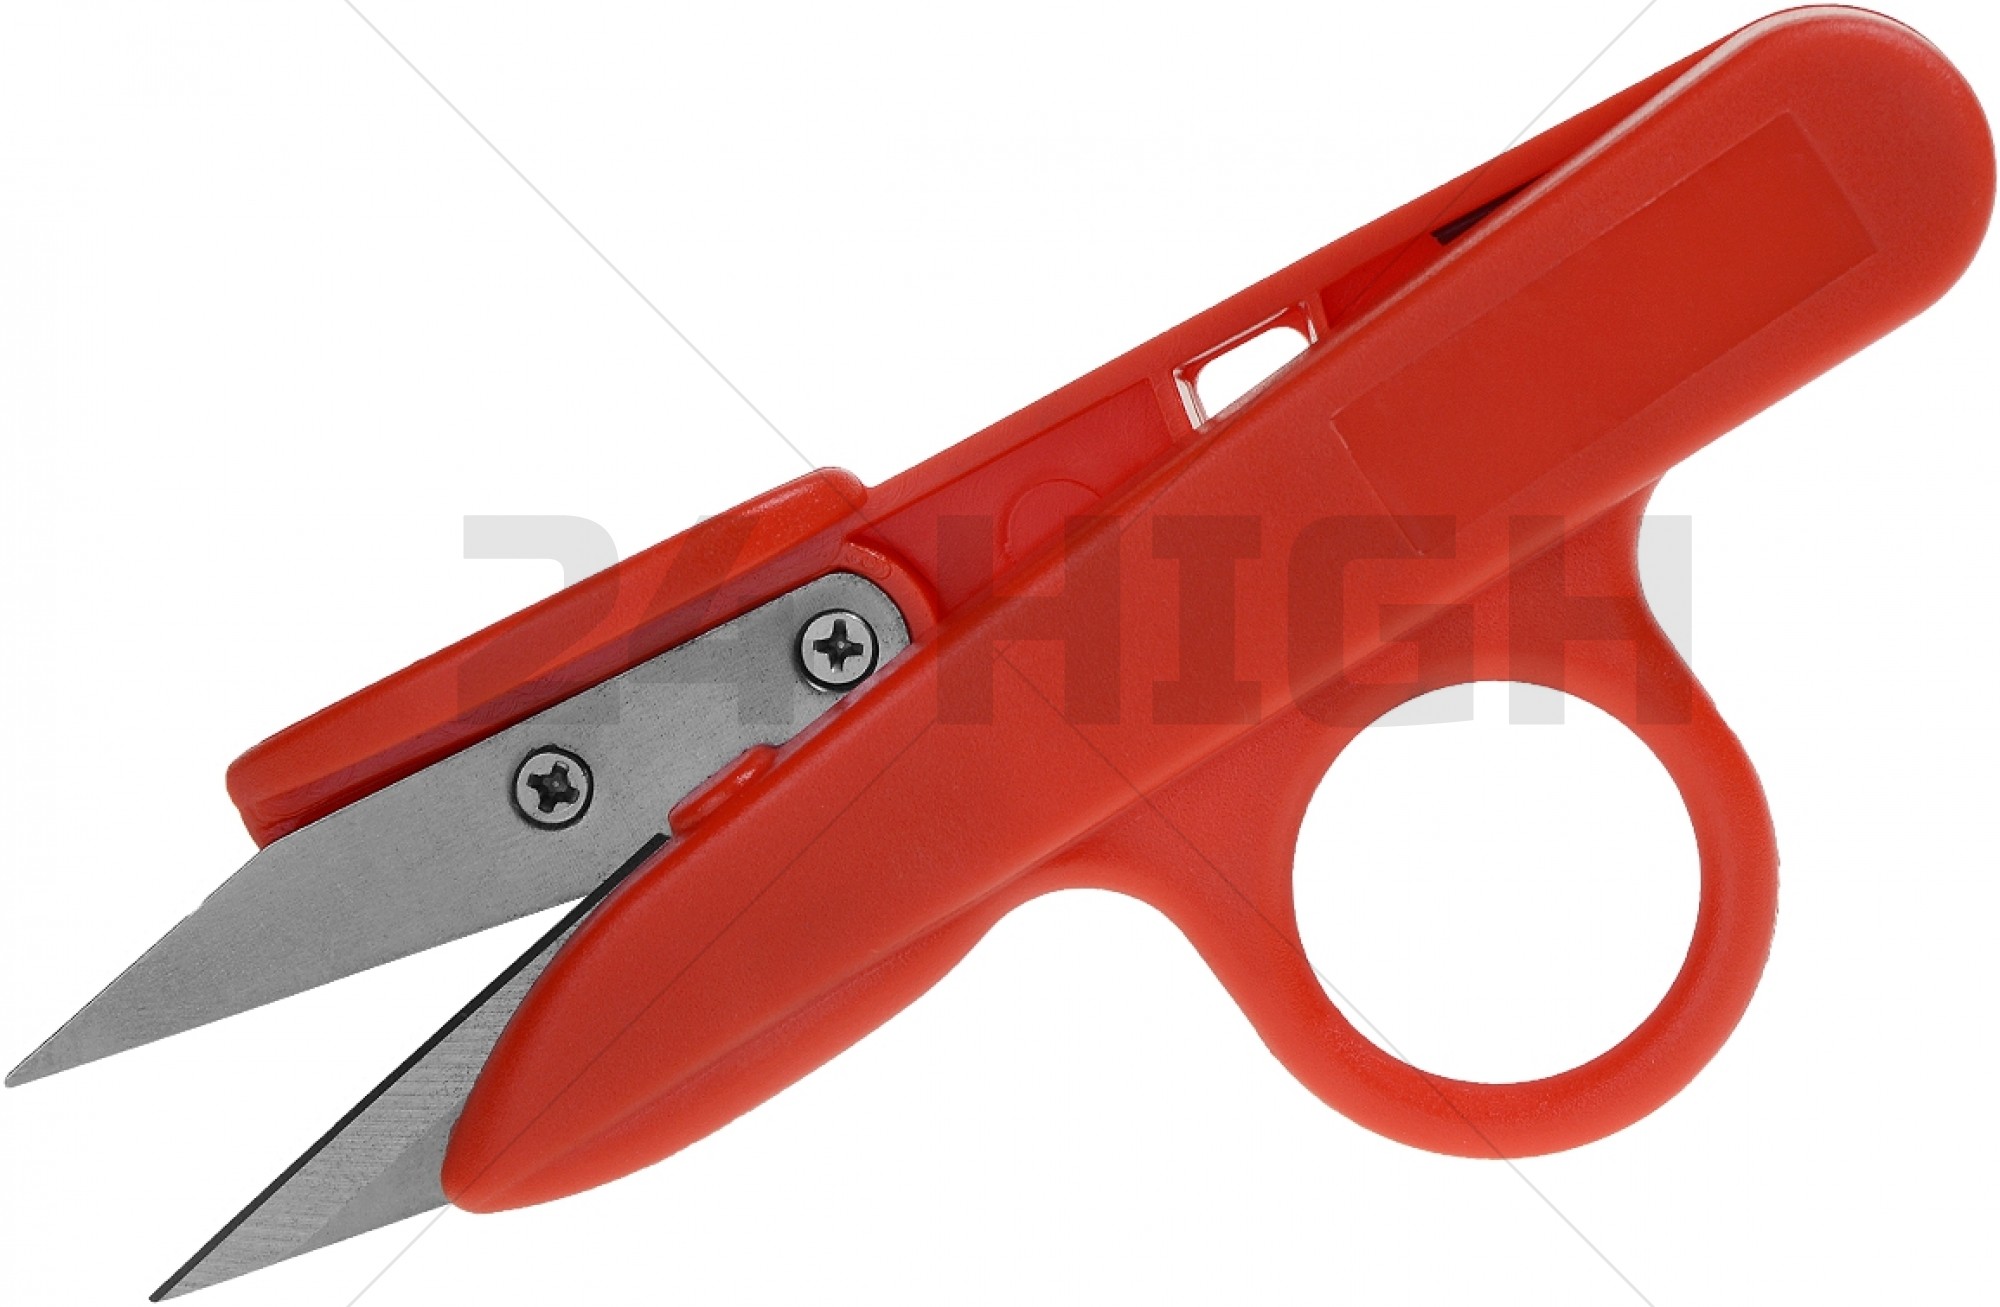 Trim scissors Single ring scissors